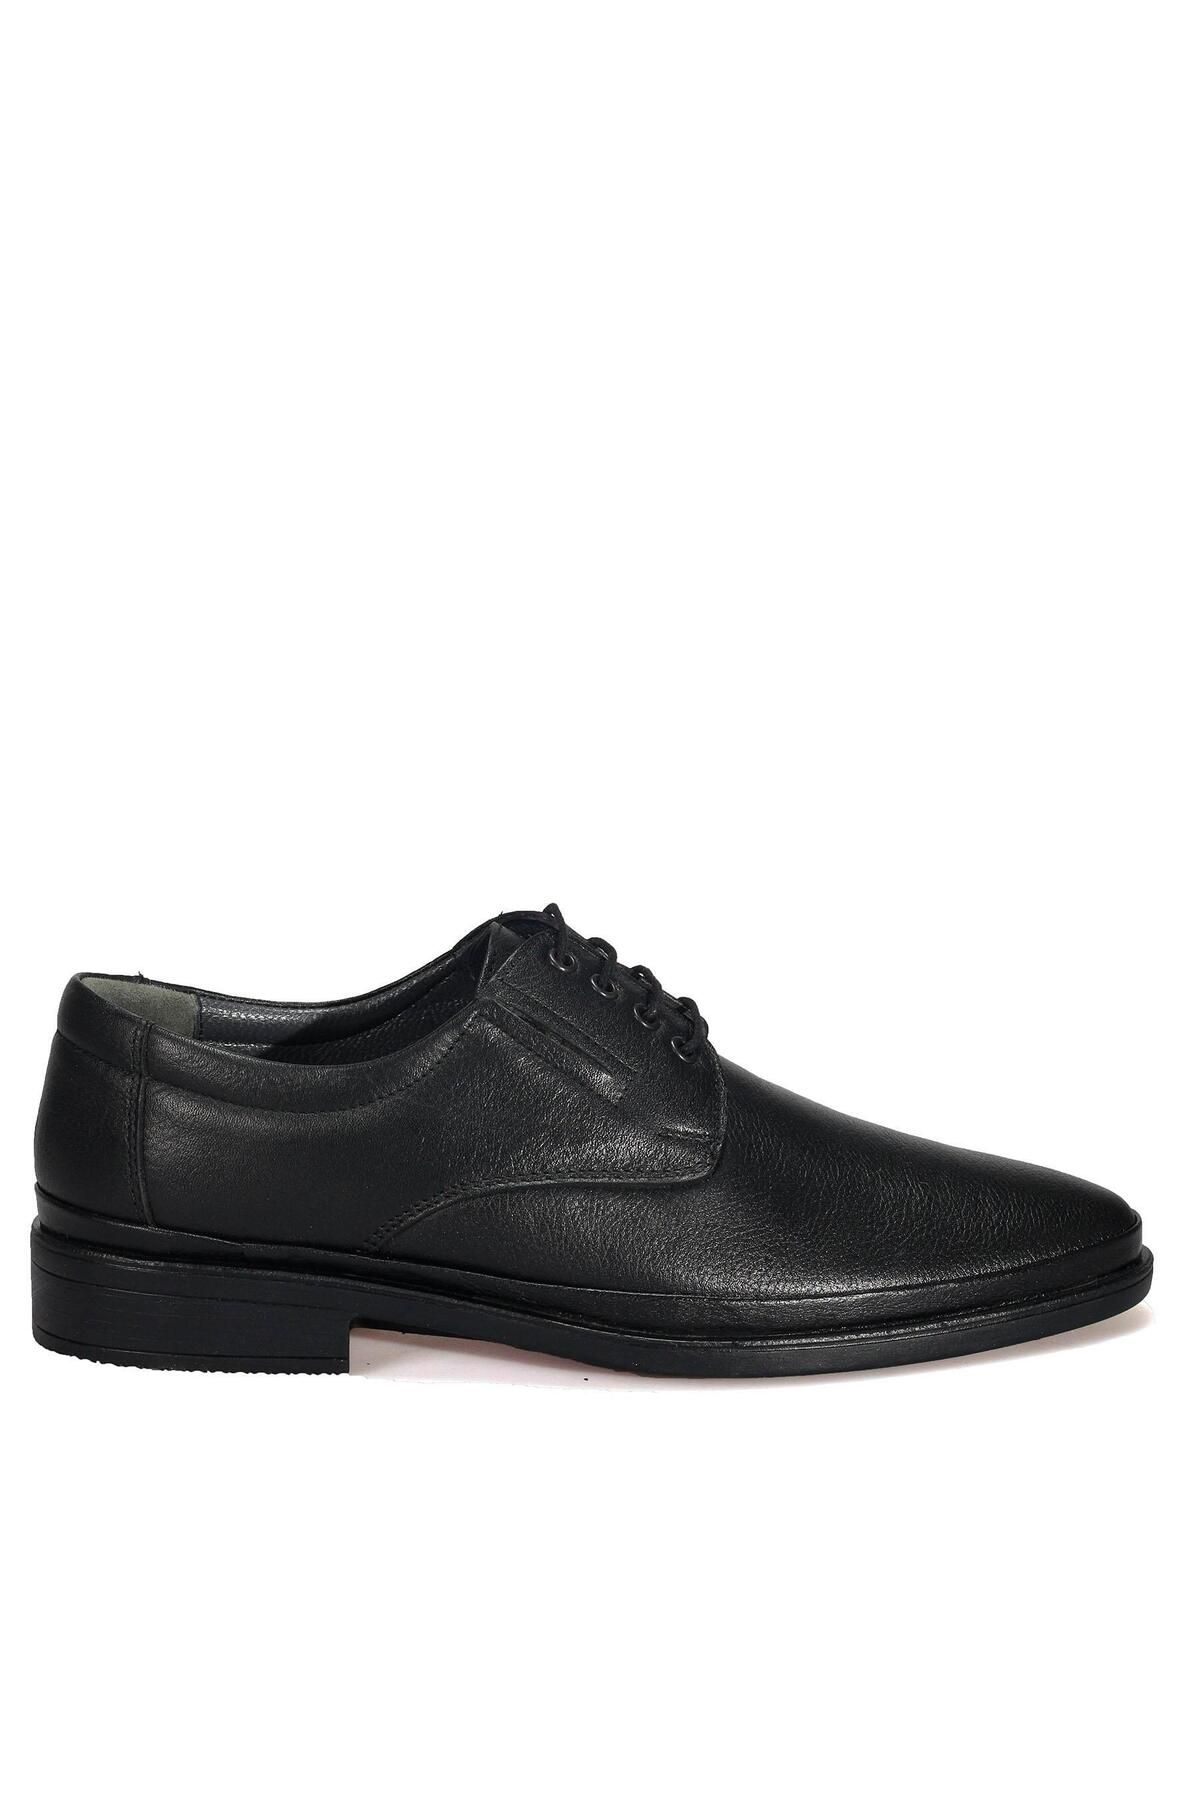 AREGA Bağcıklı Siyah Klasik Erkek Deri Ayakkabı